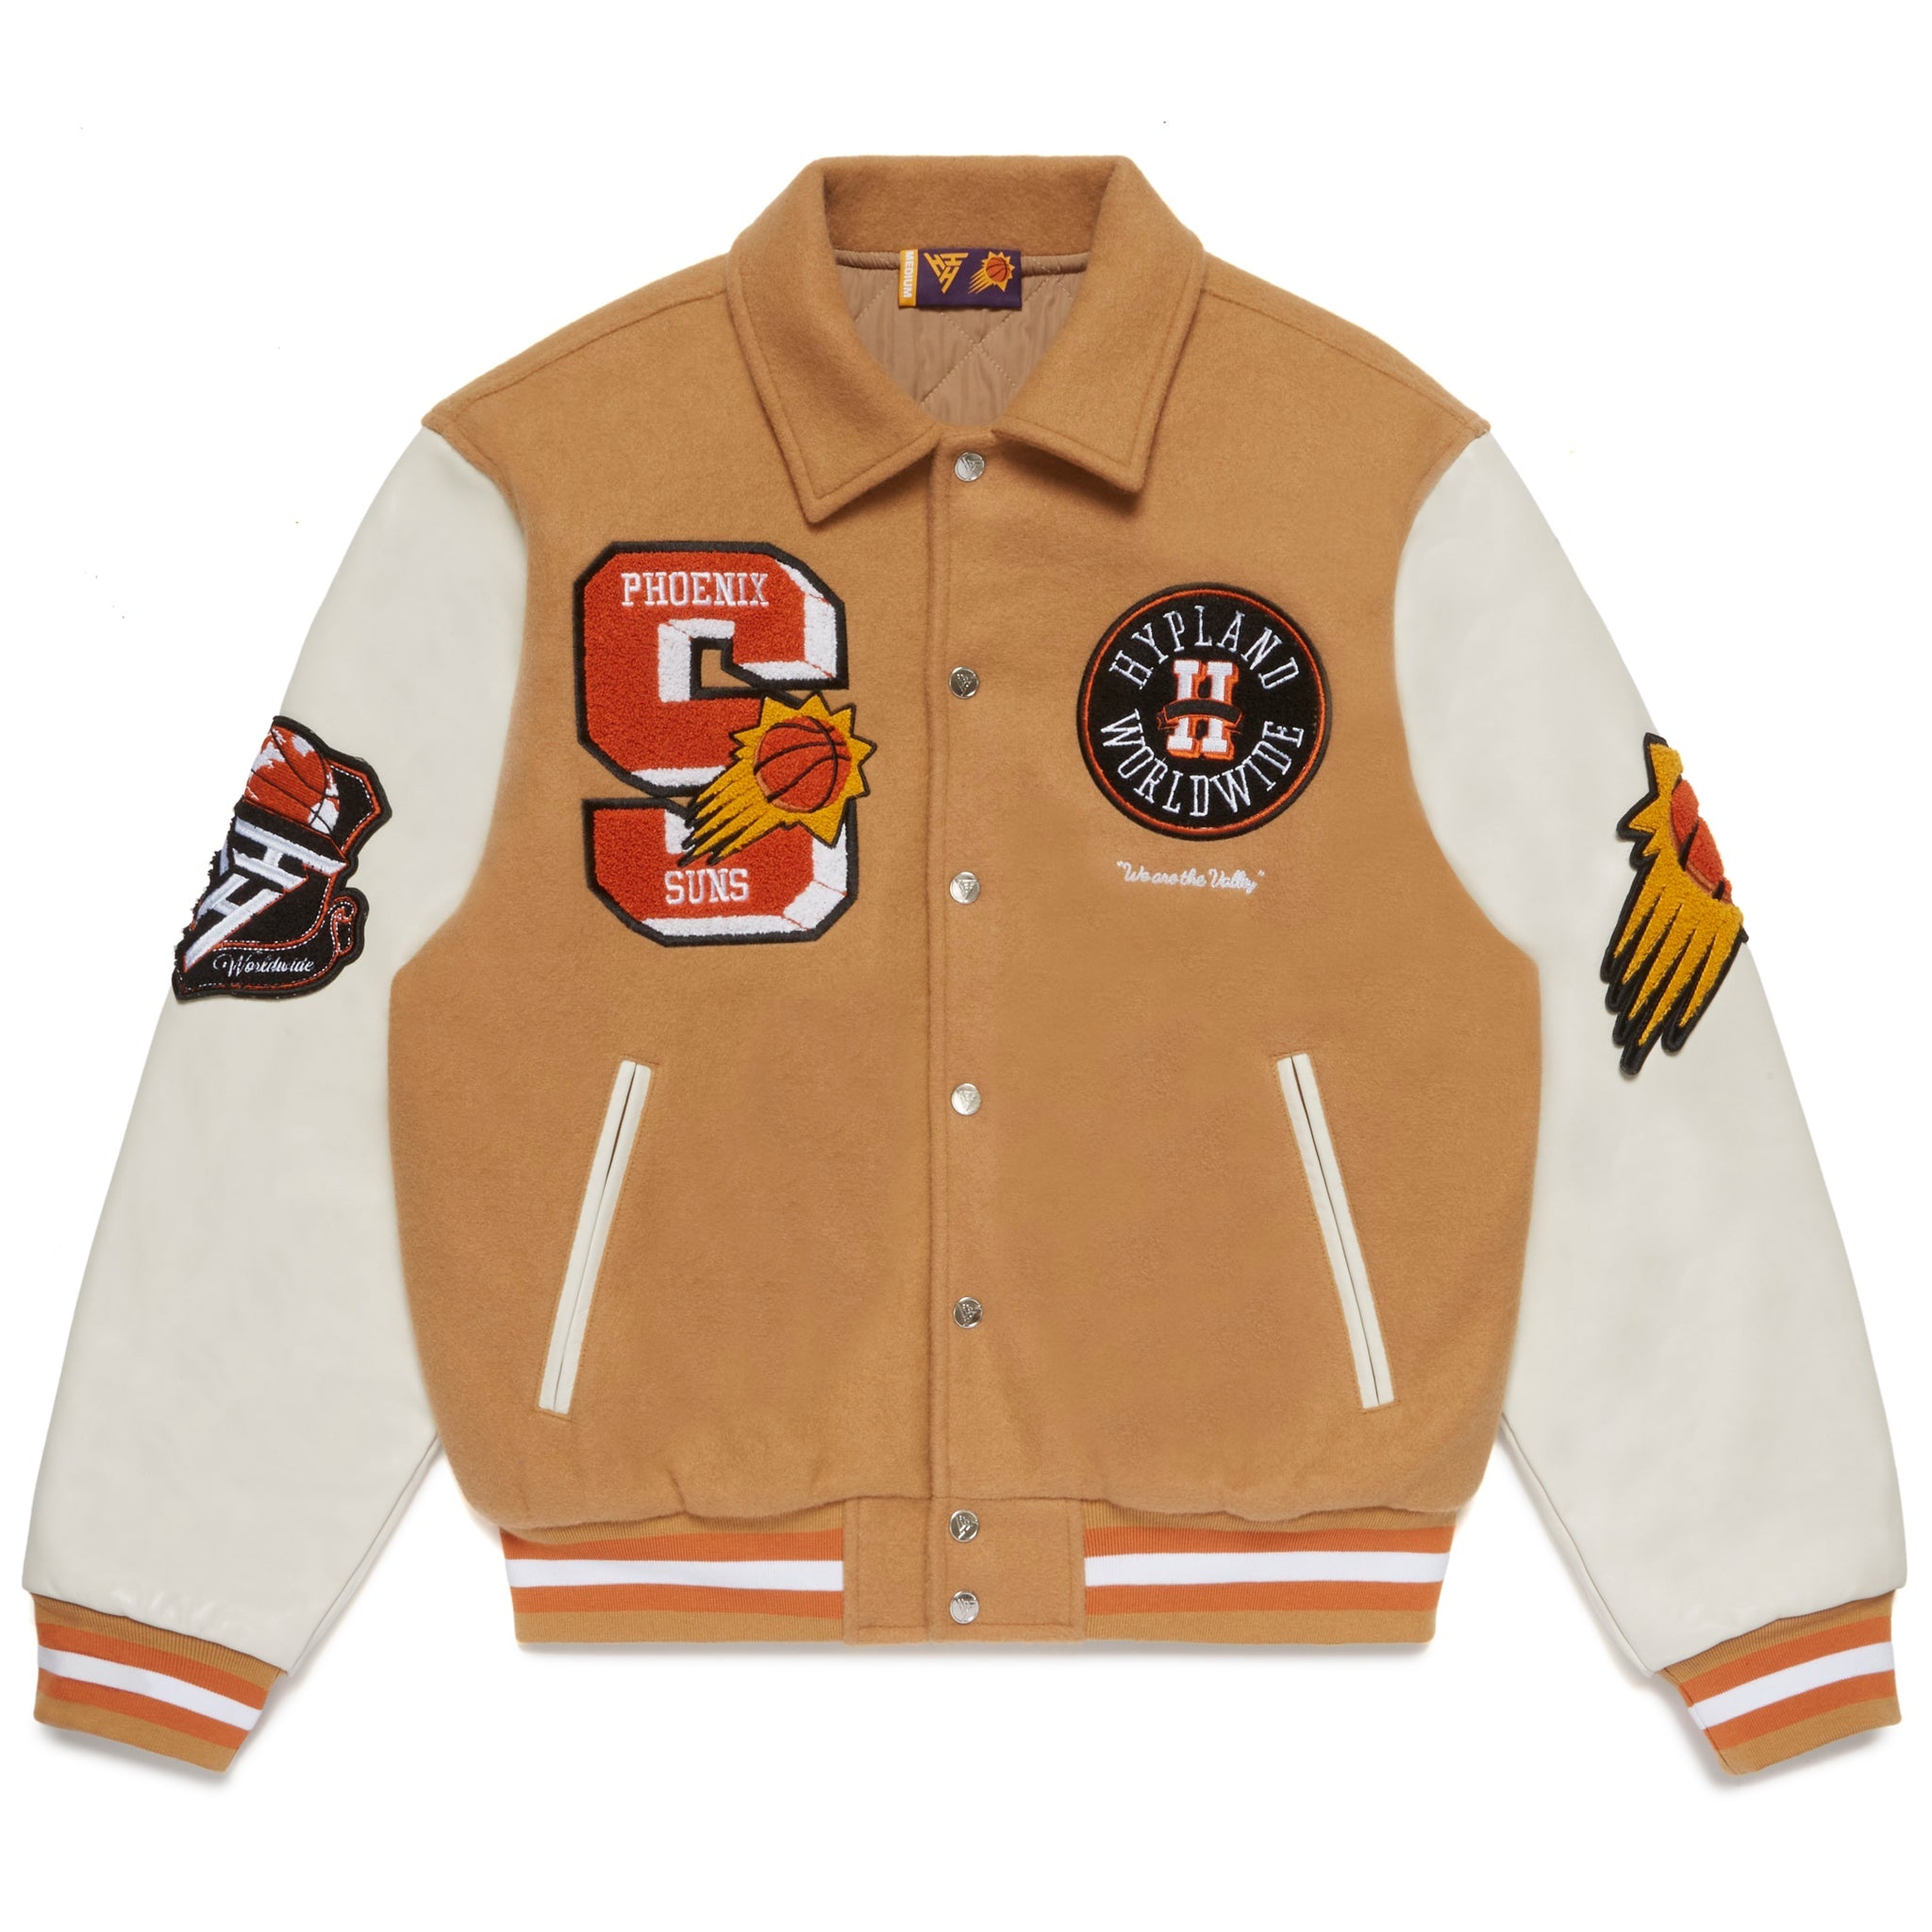 Hypland NBA Phoenix Suns Varsity Jacket (Sand) Small